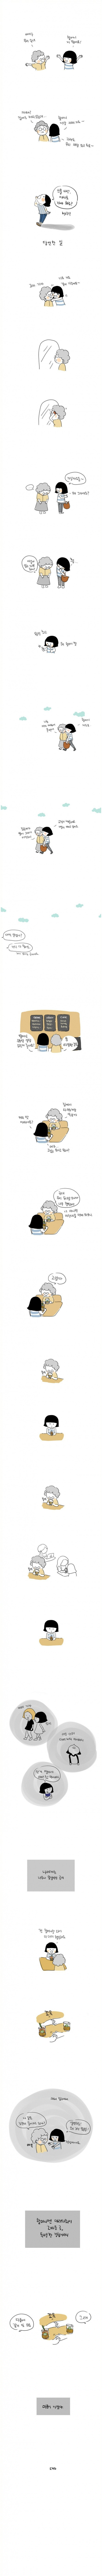 할머니와 카페가는 만화.jpg